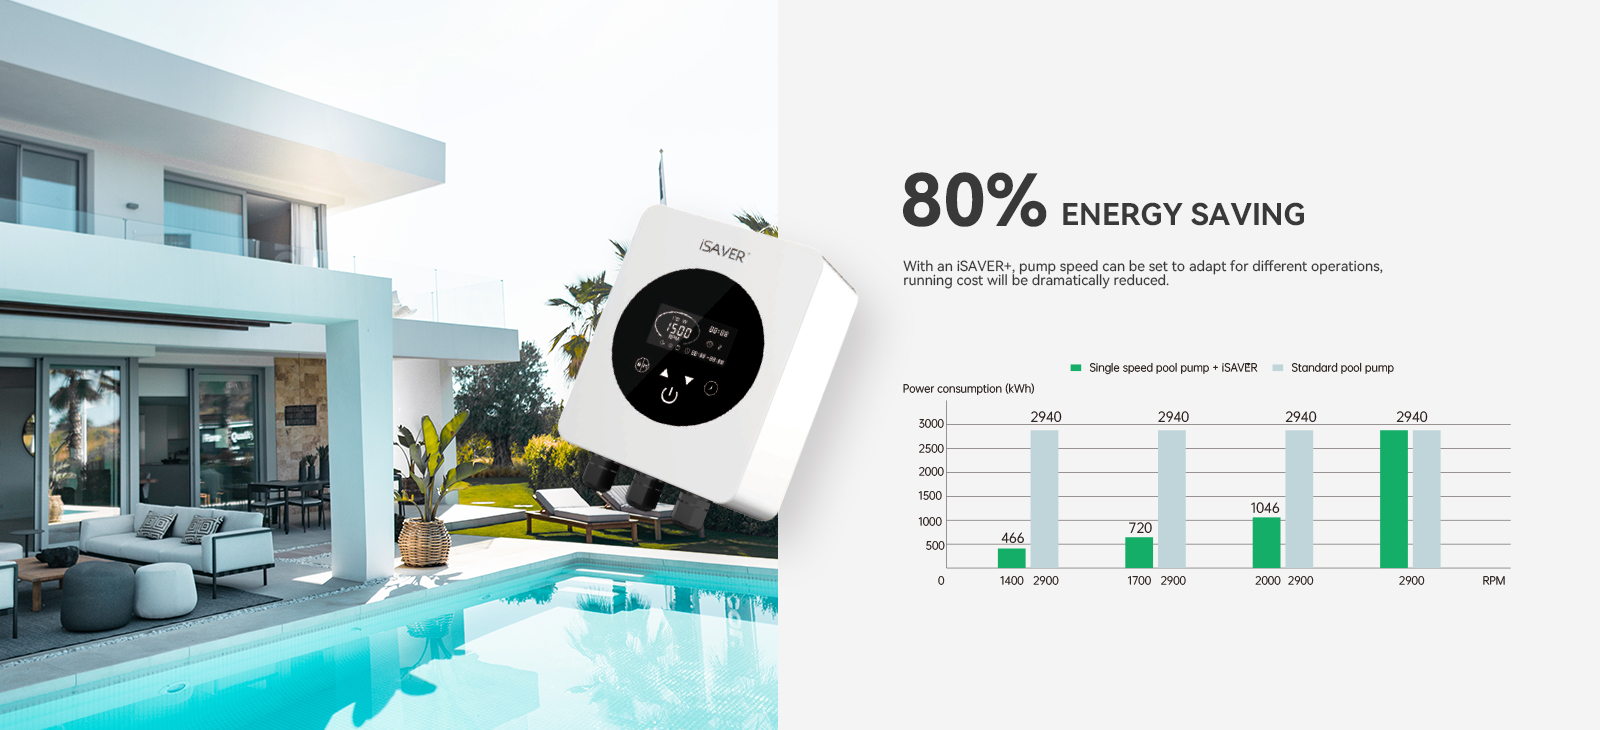 iSAVER+ Pompa per piscina con inverter di frequenza 80% di risparmio energetico